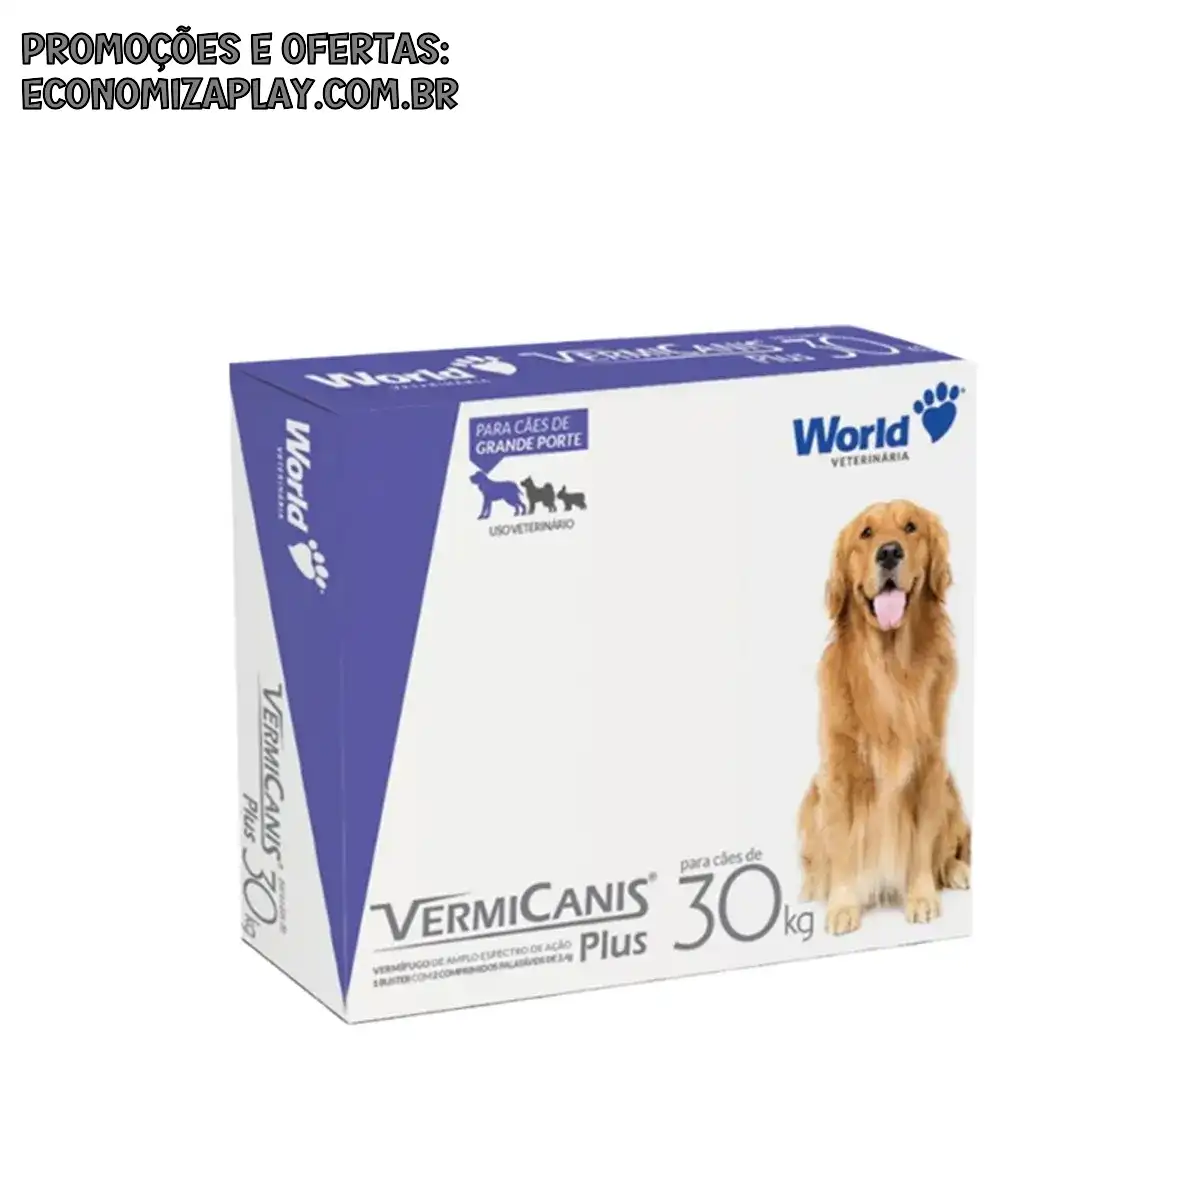 Vermífugo Vermicanis 24g Cães 30Kg PET Caixa 2 Comprimidos World